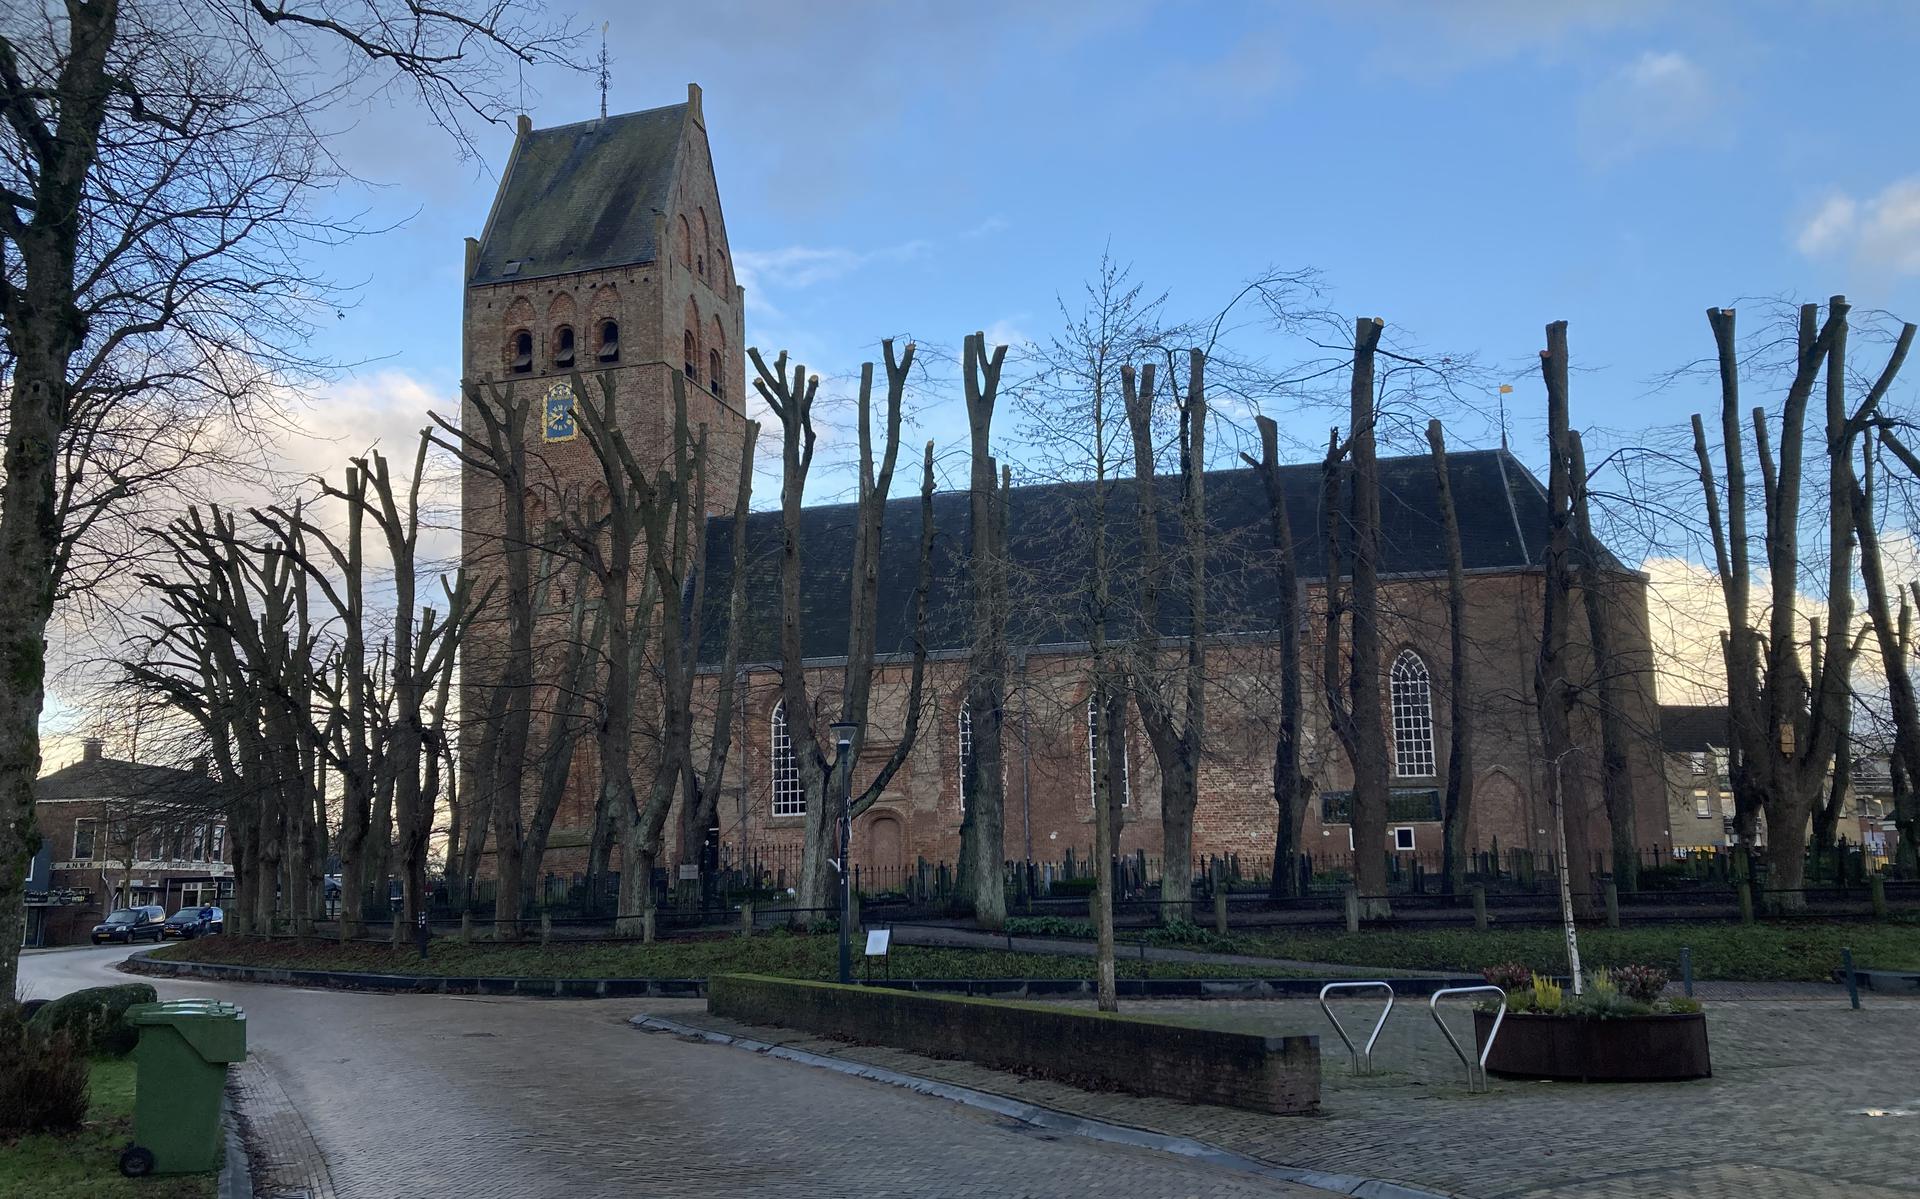 De Sint Vituskerk in Stiens (de tank is op deze foto niet te zien).